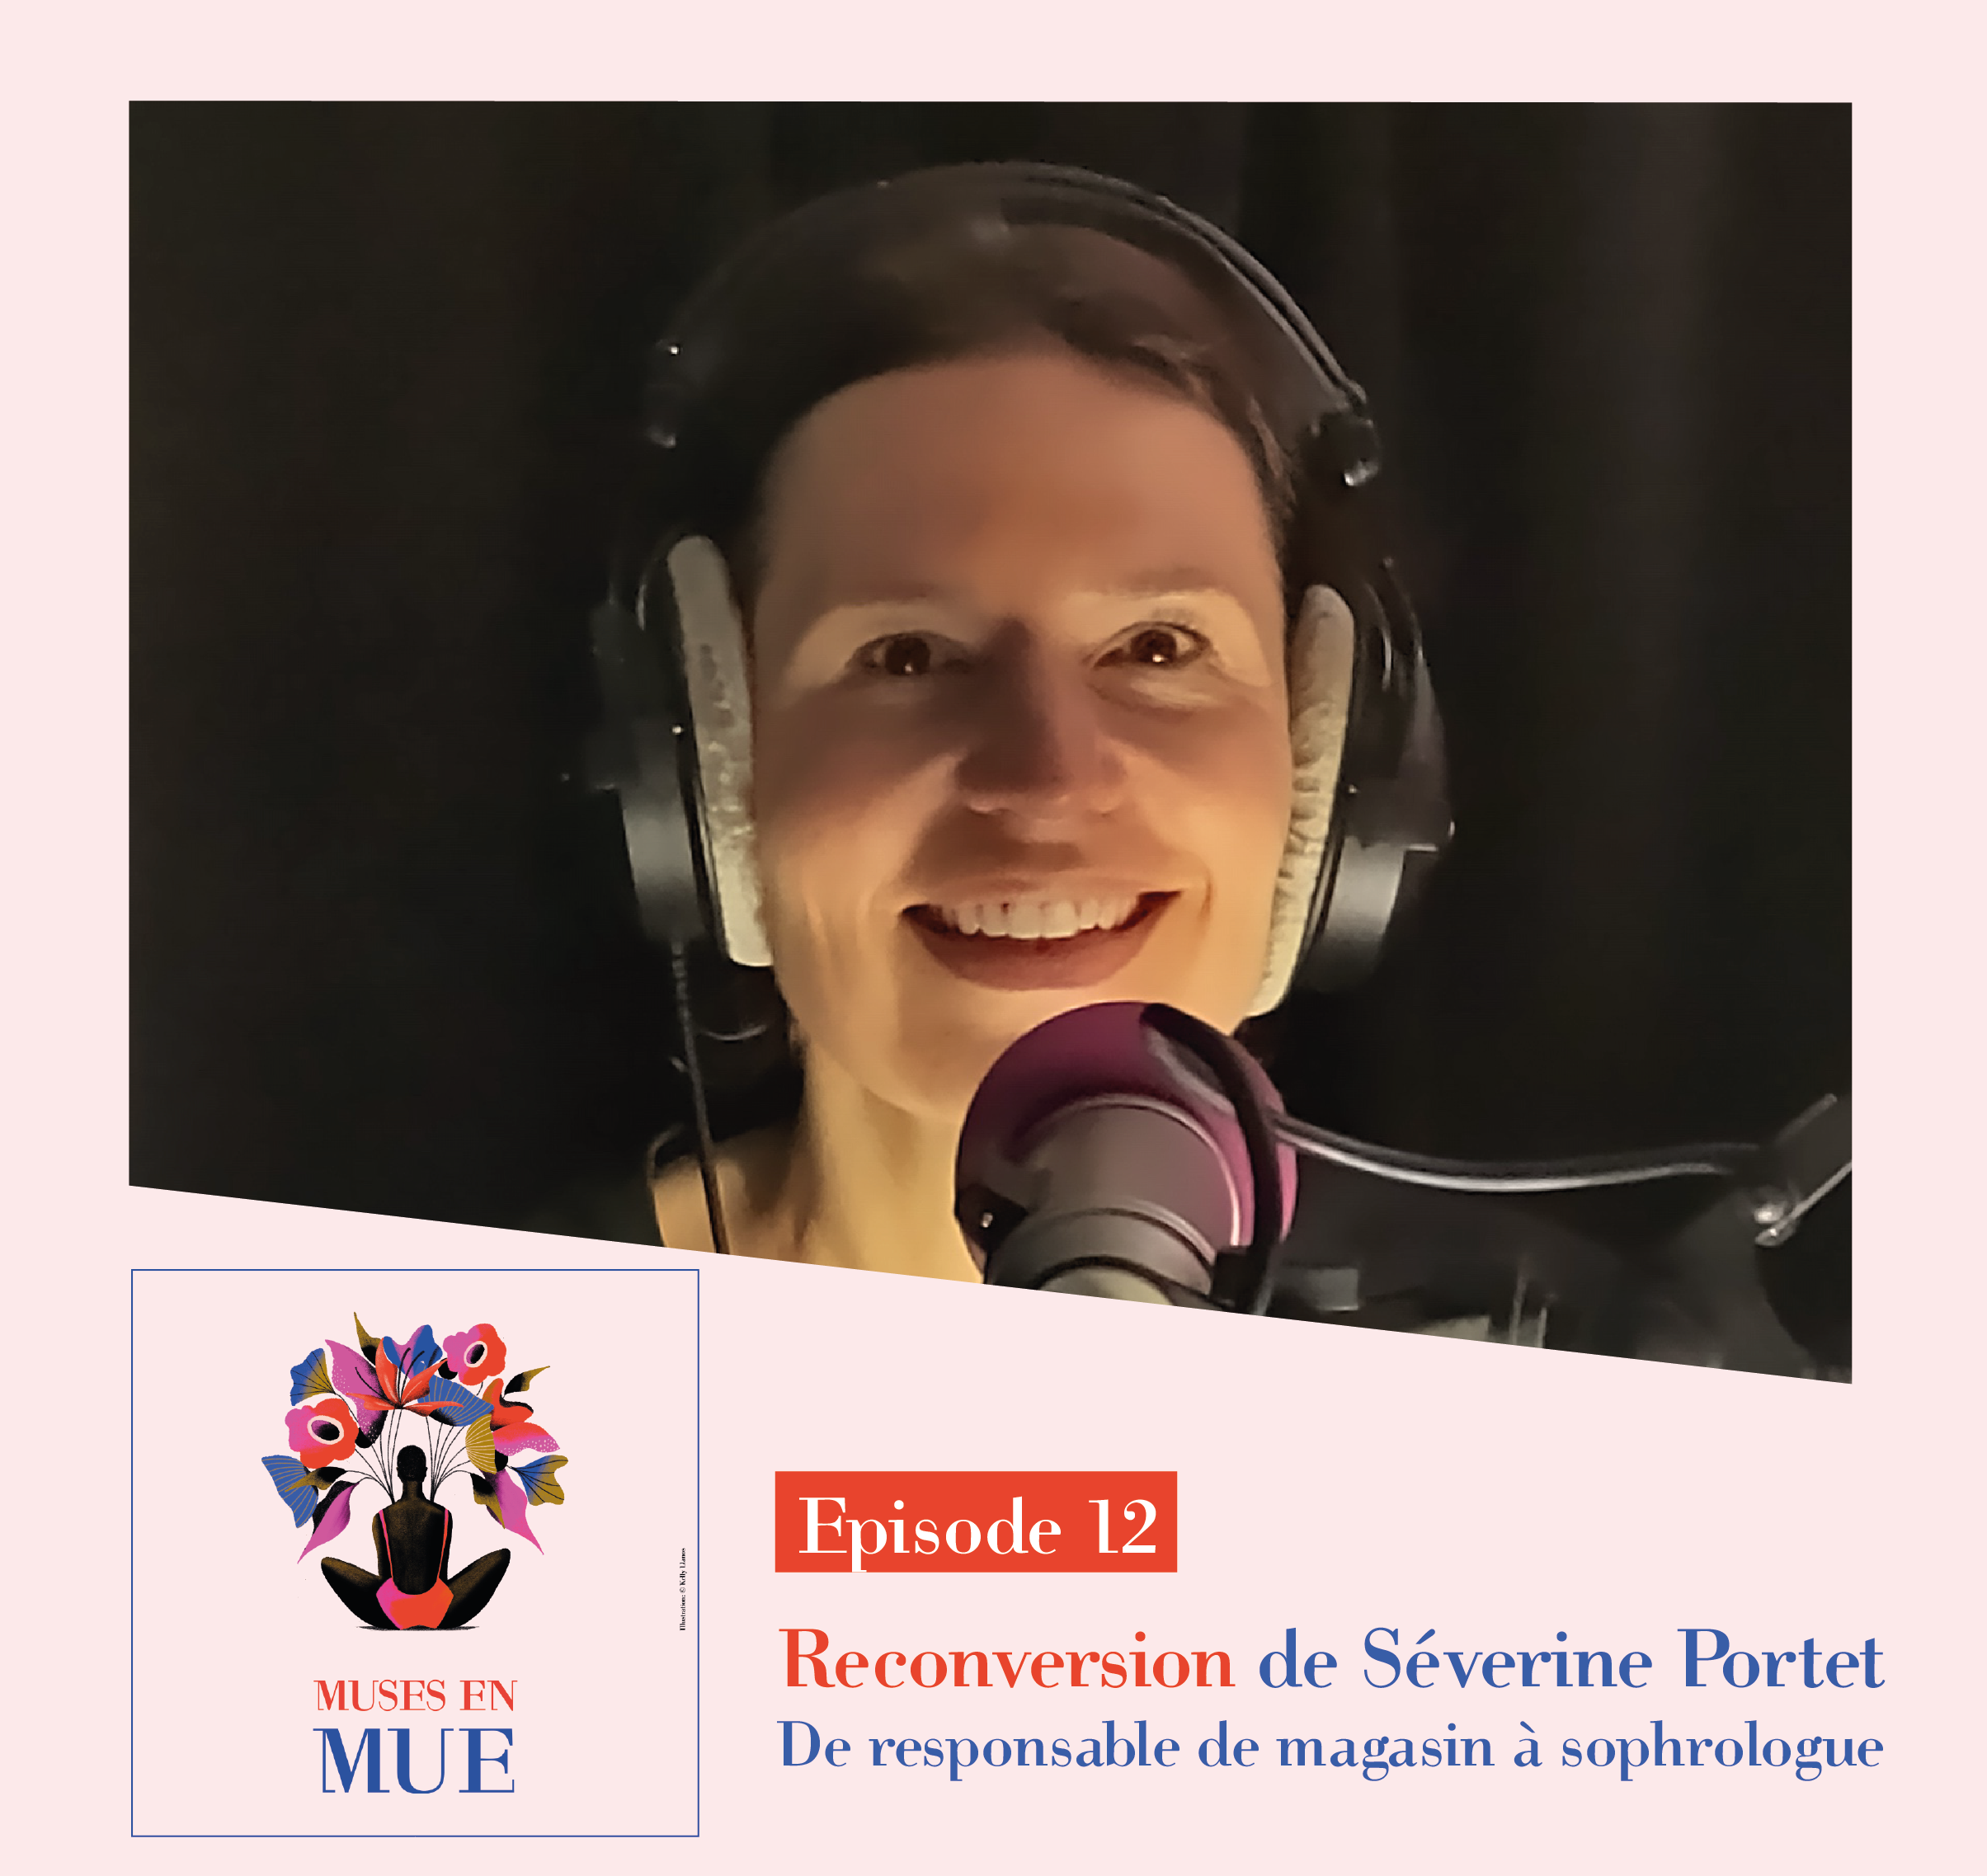 MUSES EN MUE – Episode 12 sur la reconversion  de Séverine Portet